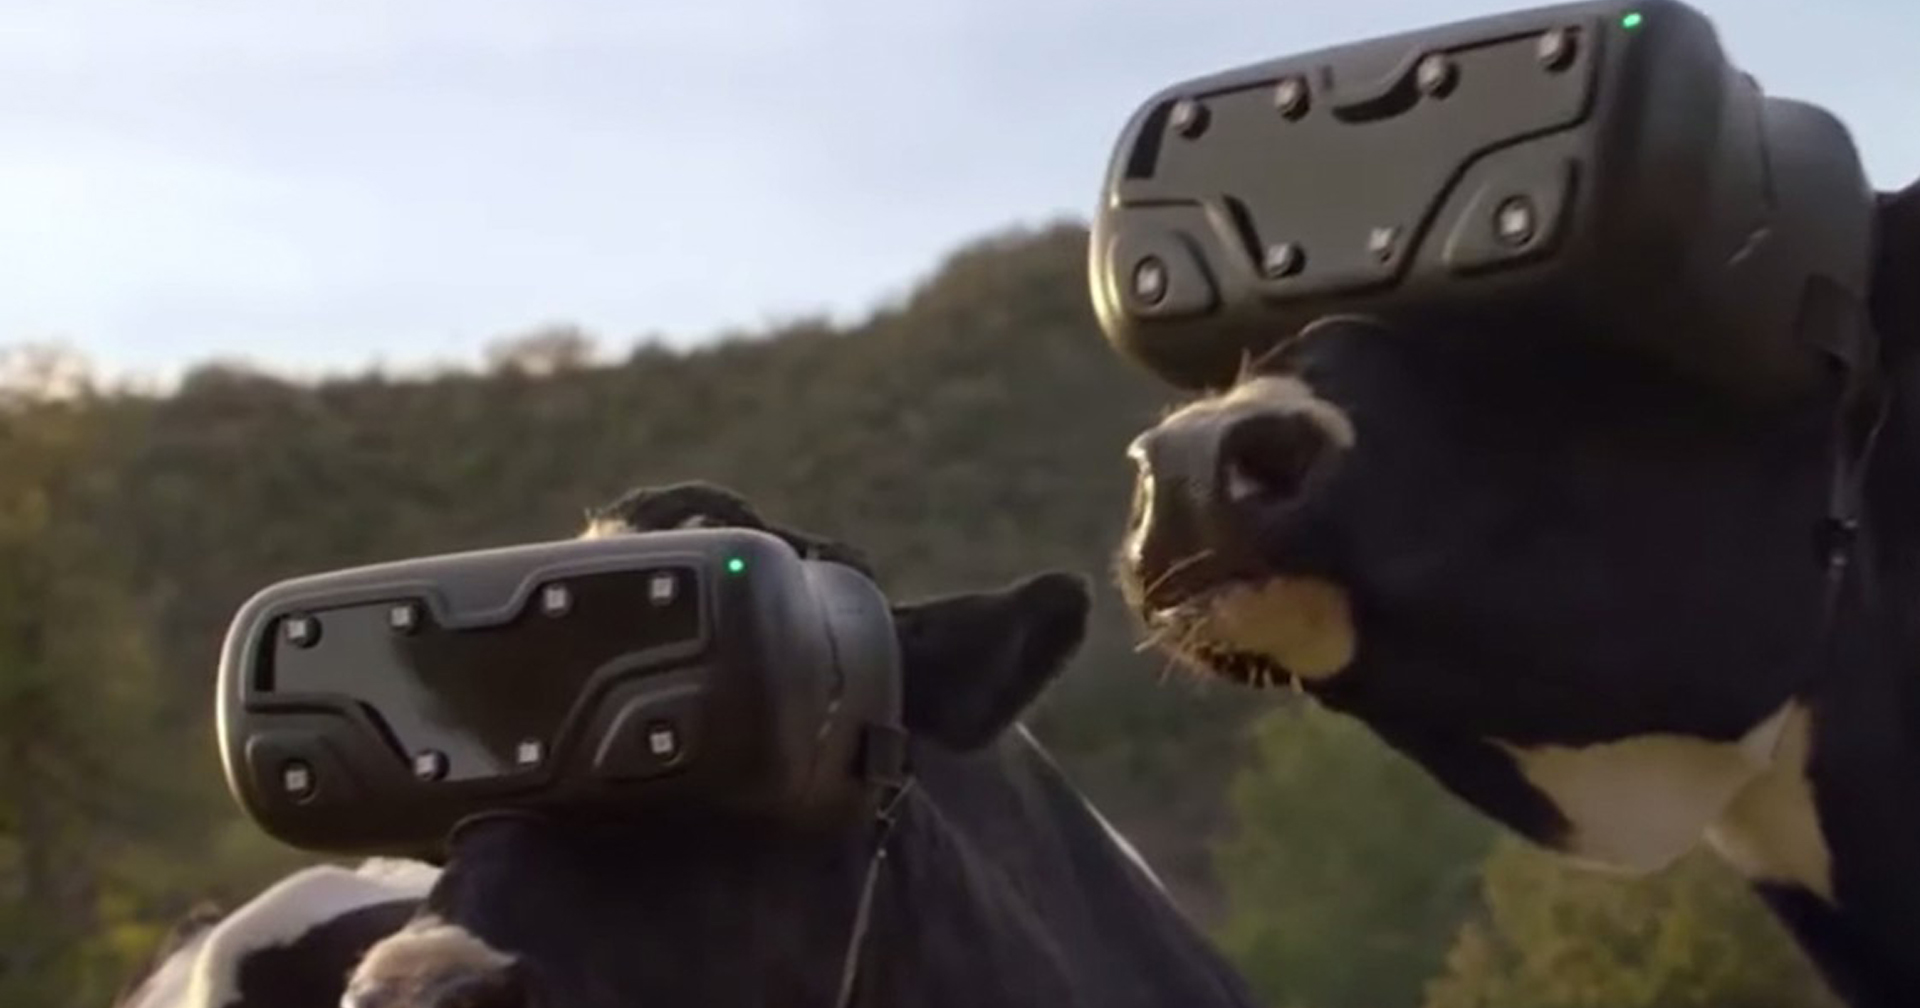 ไม่เชื่อก็ต้องเชื่อ! แม้แต่วัวยังใช้แว่น VR